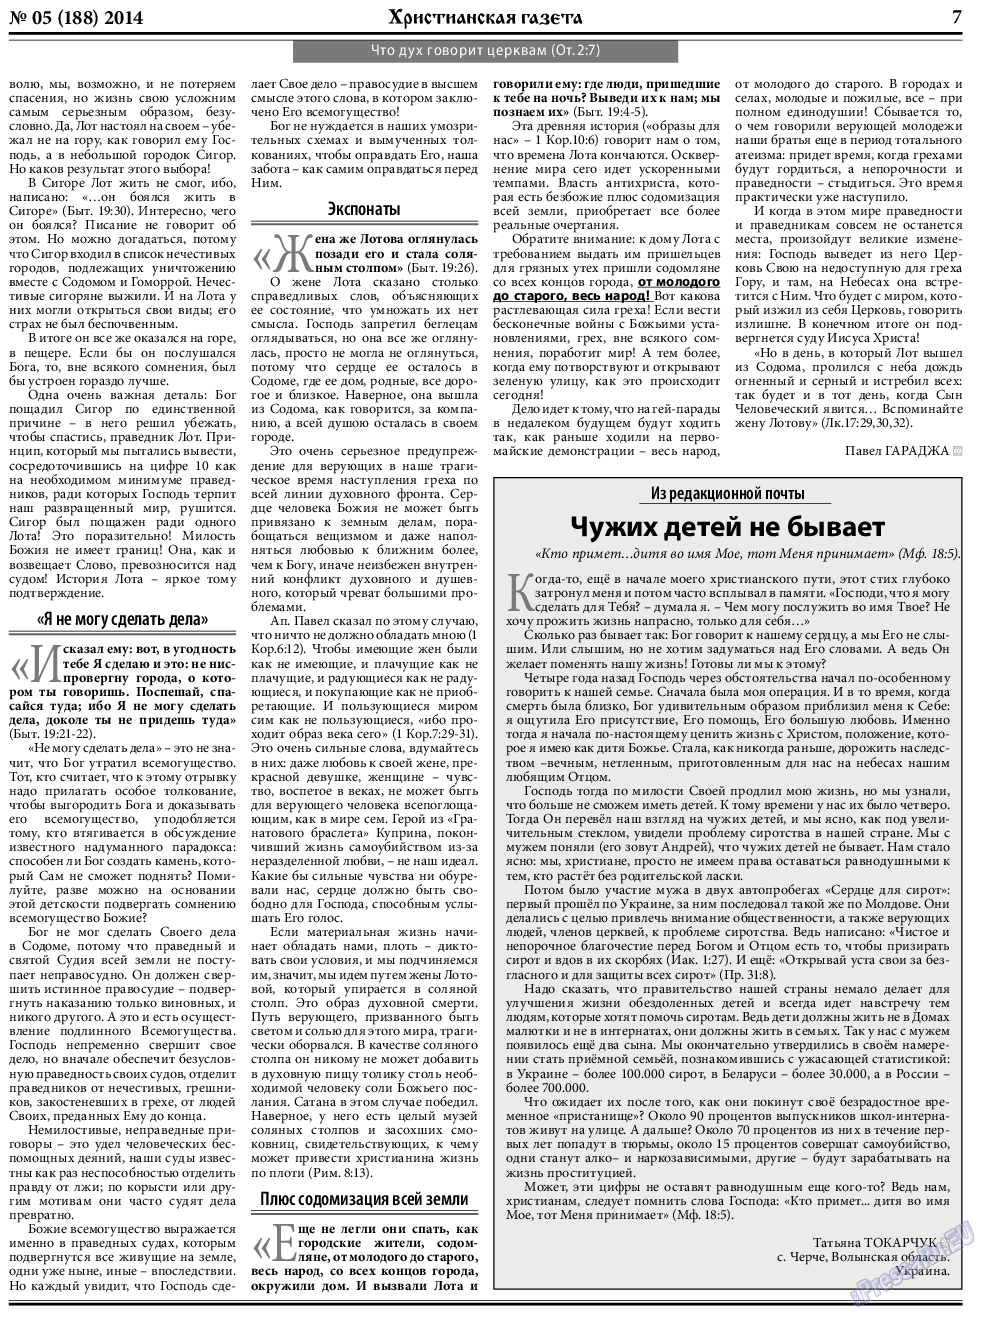 Христианская газета, газета. 2014 №5 стр.7